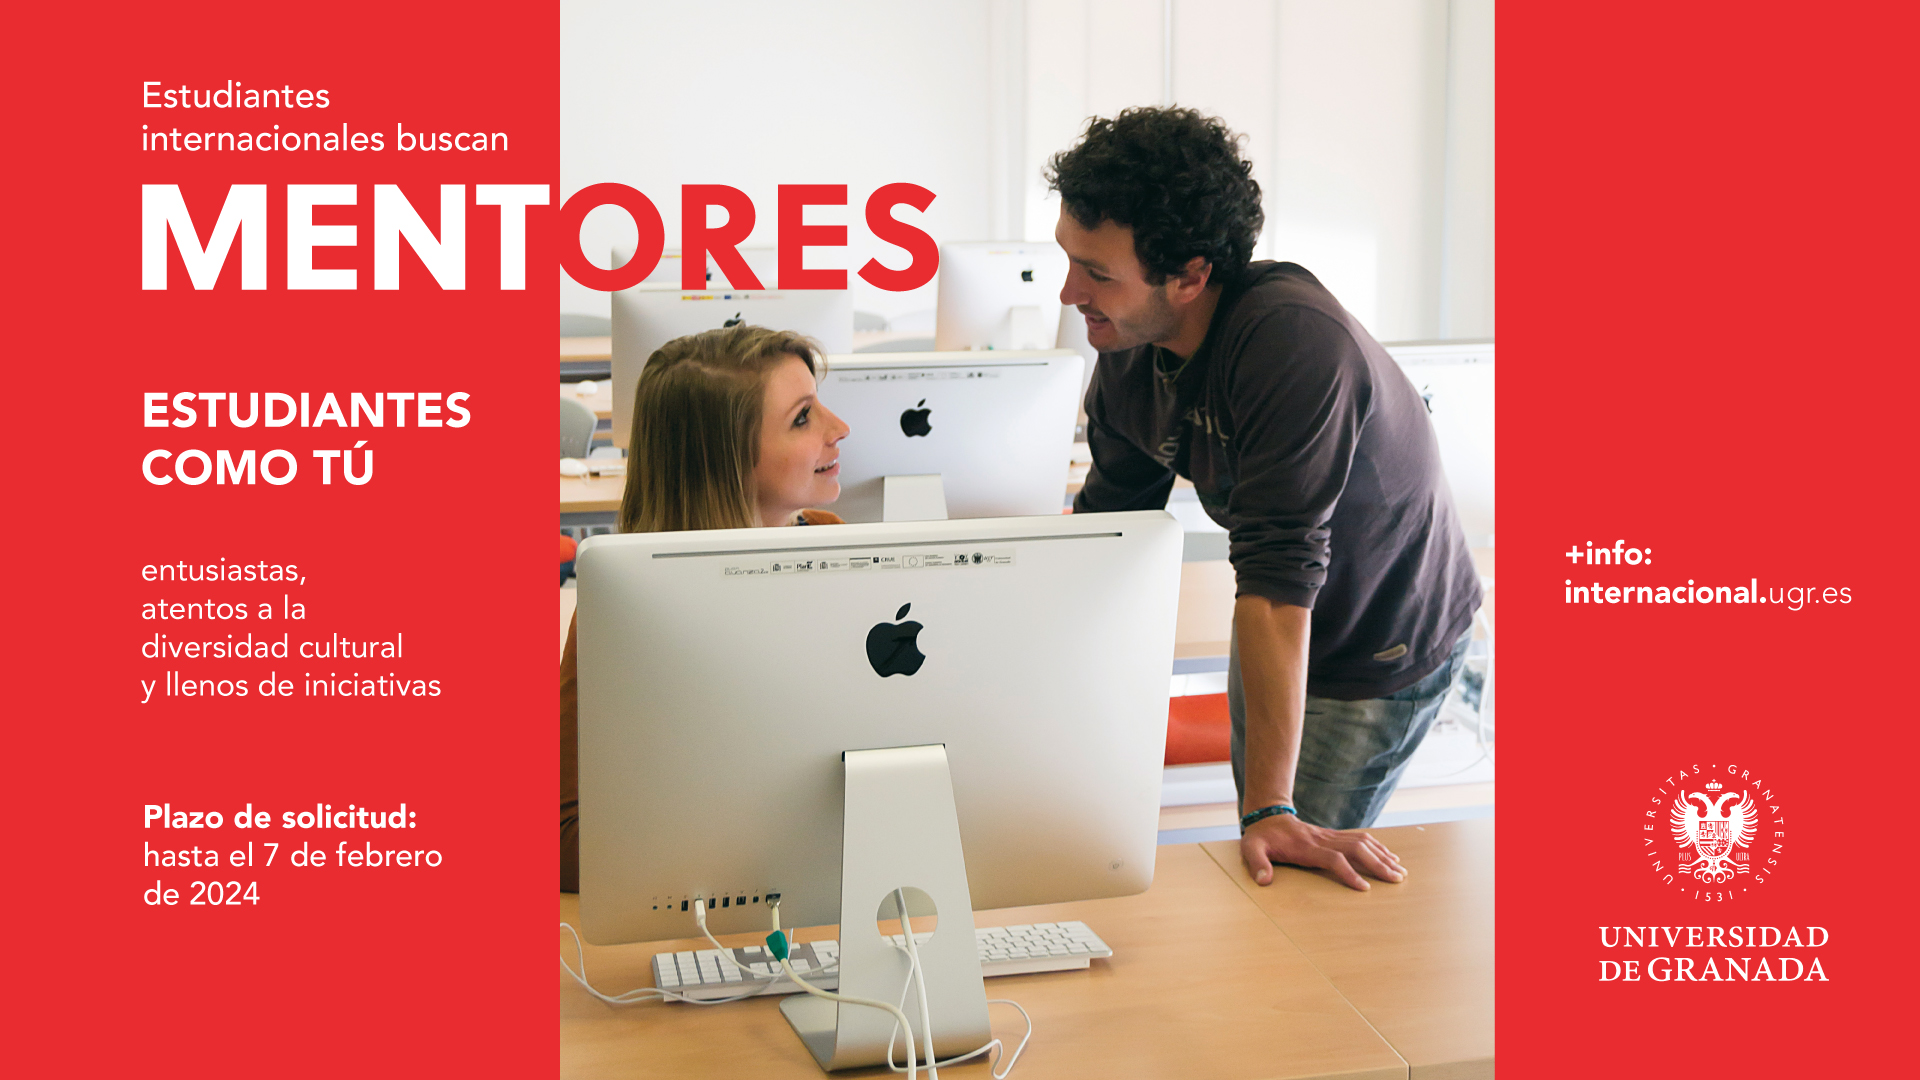 Cartel informativo Estudiantes internacionales buscan mentores con el enlace de más información